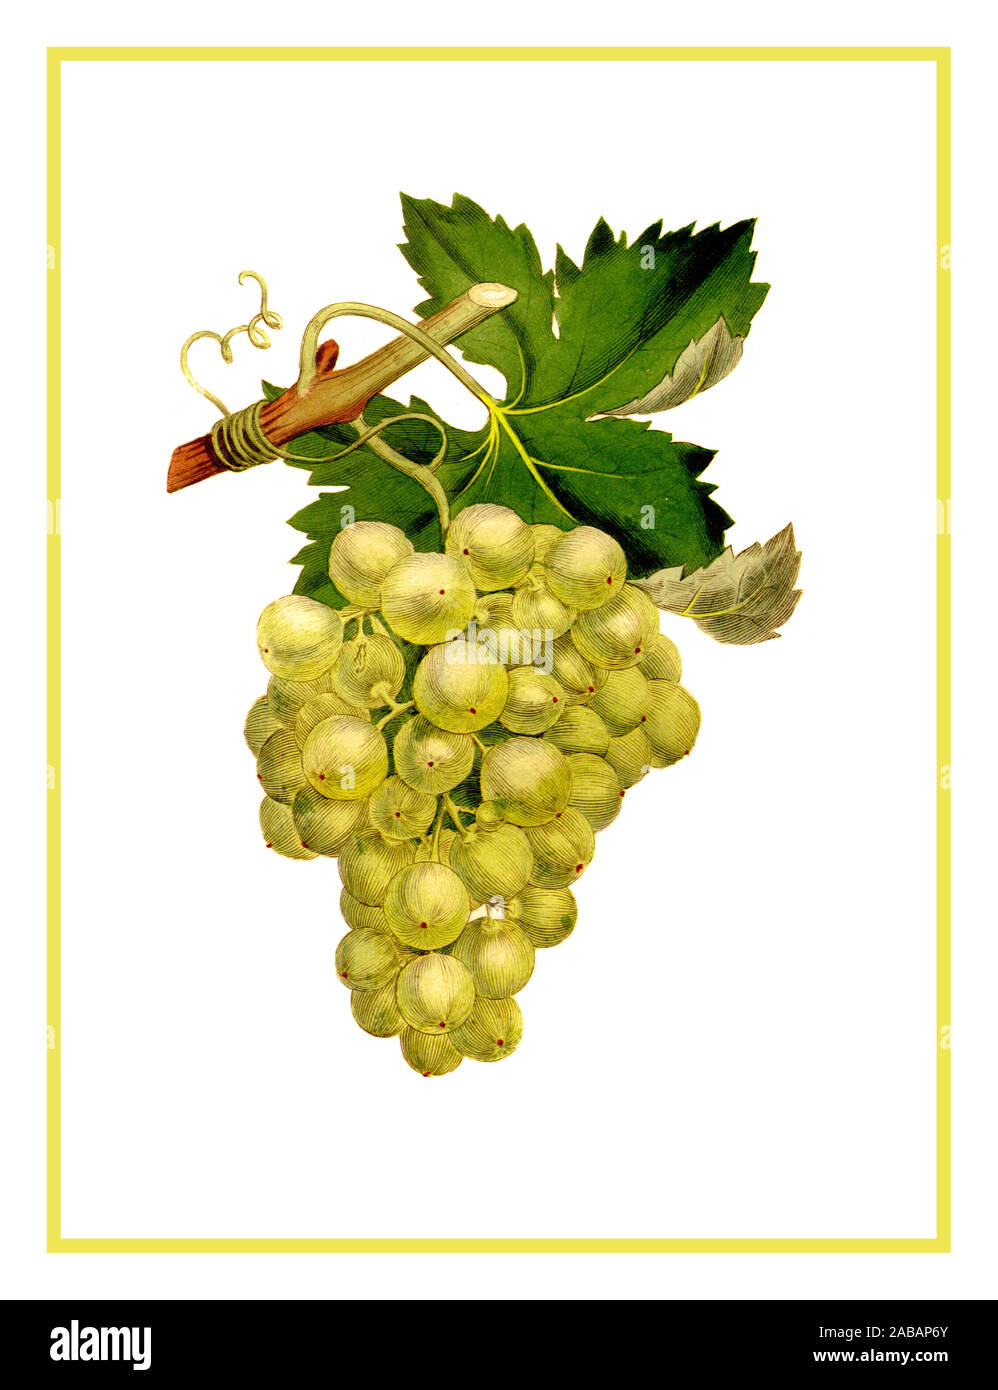 Jahrgang 1890 Trauben Farblithographie' Vitis vinifera 'weiße Weintrauben Abbildung. Vitis vinifera, die gemeinsame Weinrebe ist eine Pflanzenart aus der Gattung Vitis, native auf den Mittelmeerraum, in Mitteleuropa, und im südwestlichen Asien, aus Marokko und Portugal Norden nach Süden und von Osten nach Norden des Iran. ... Die wilden Traube wird oft als V. vinifera Subsp eingestuft Stockfoto